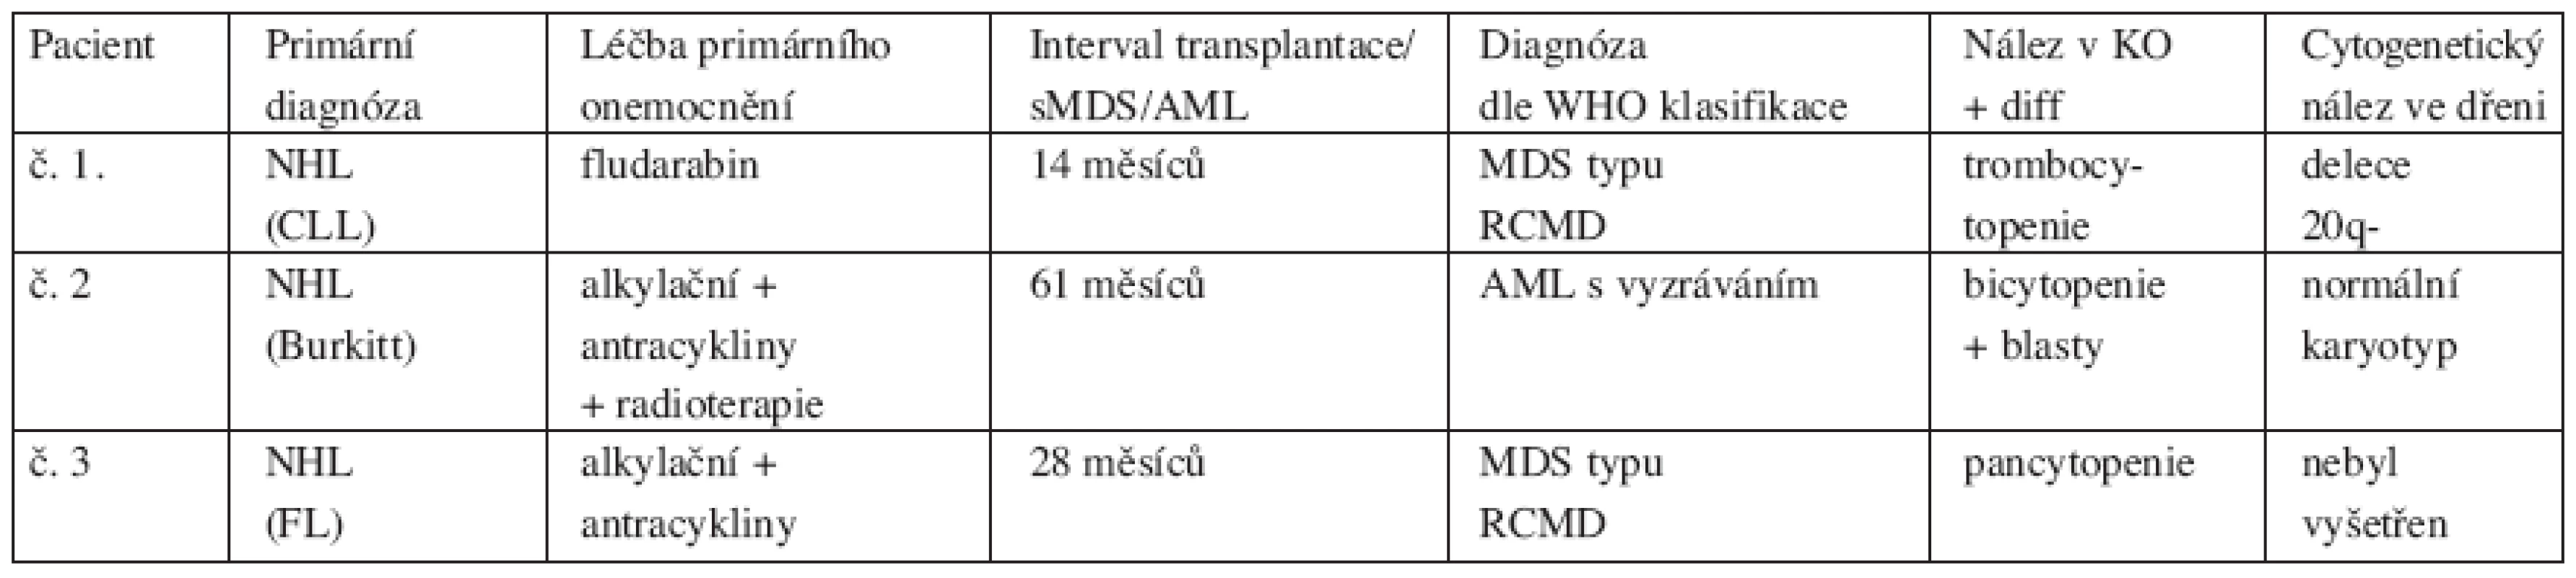 Tabulka charakteristiky pacientů sMDS/AML